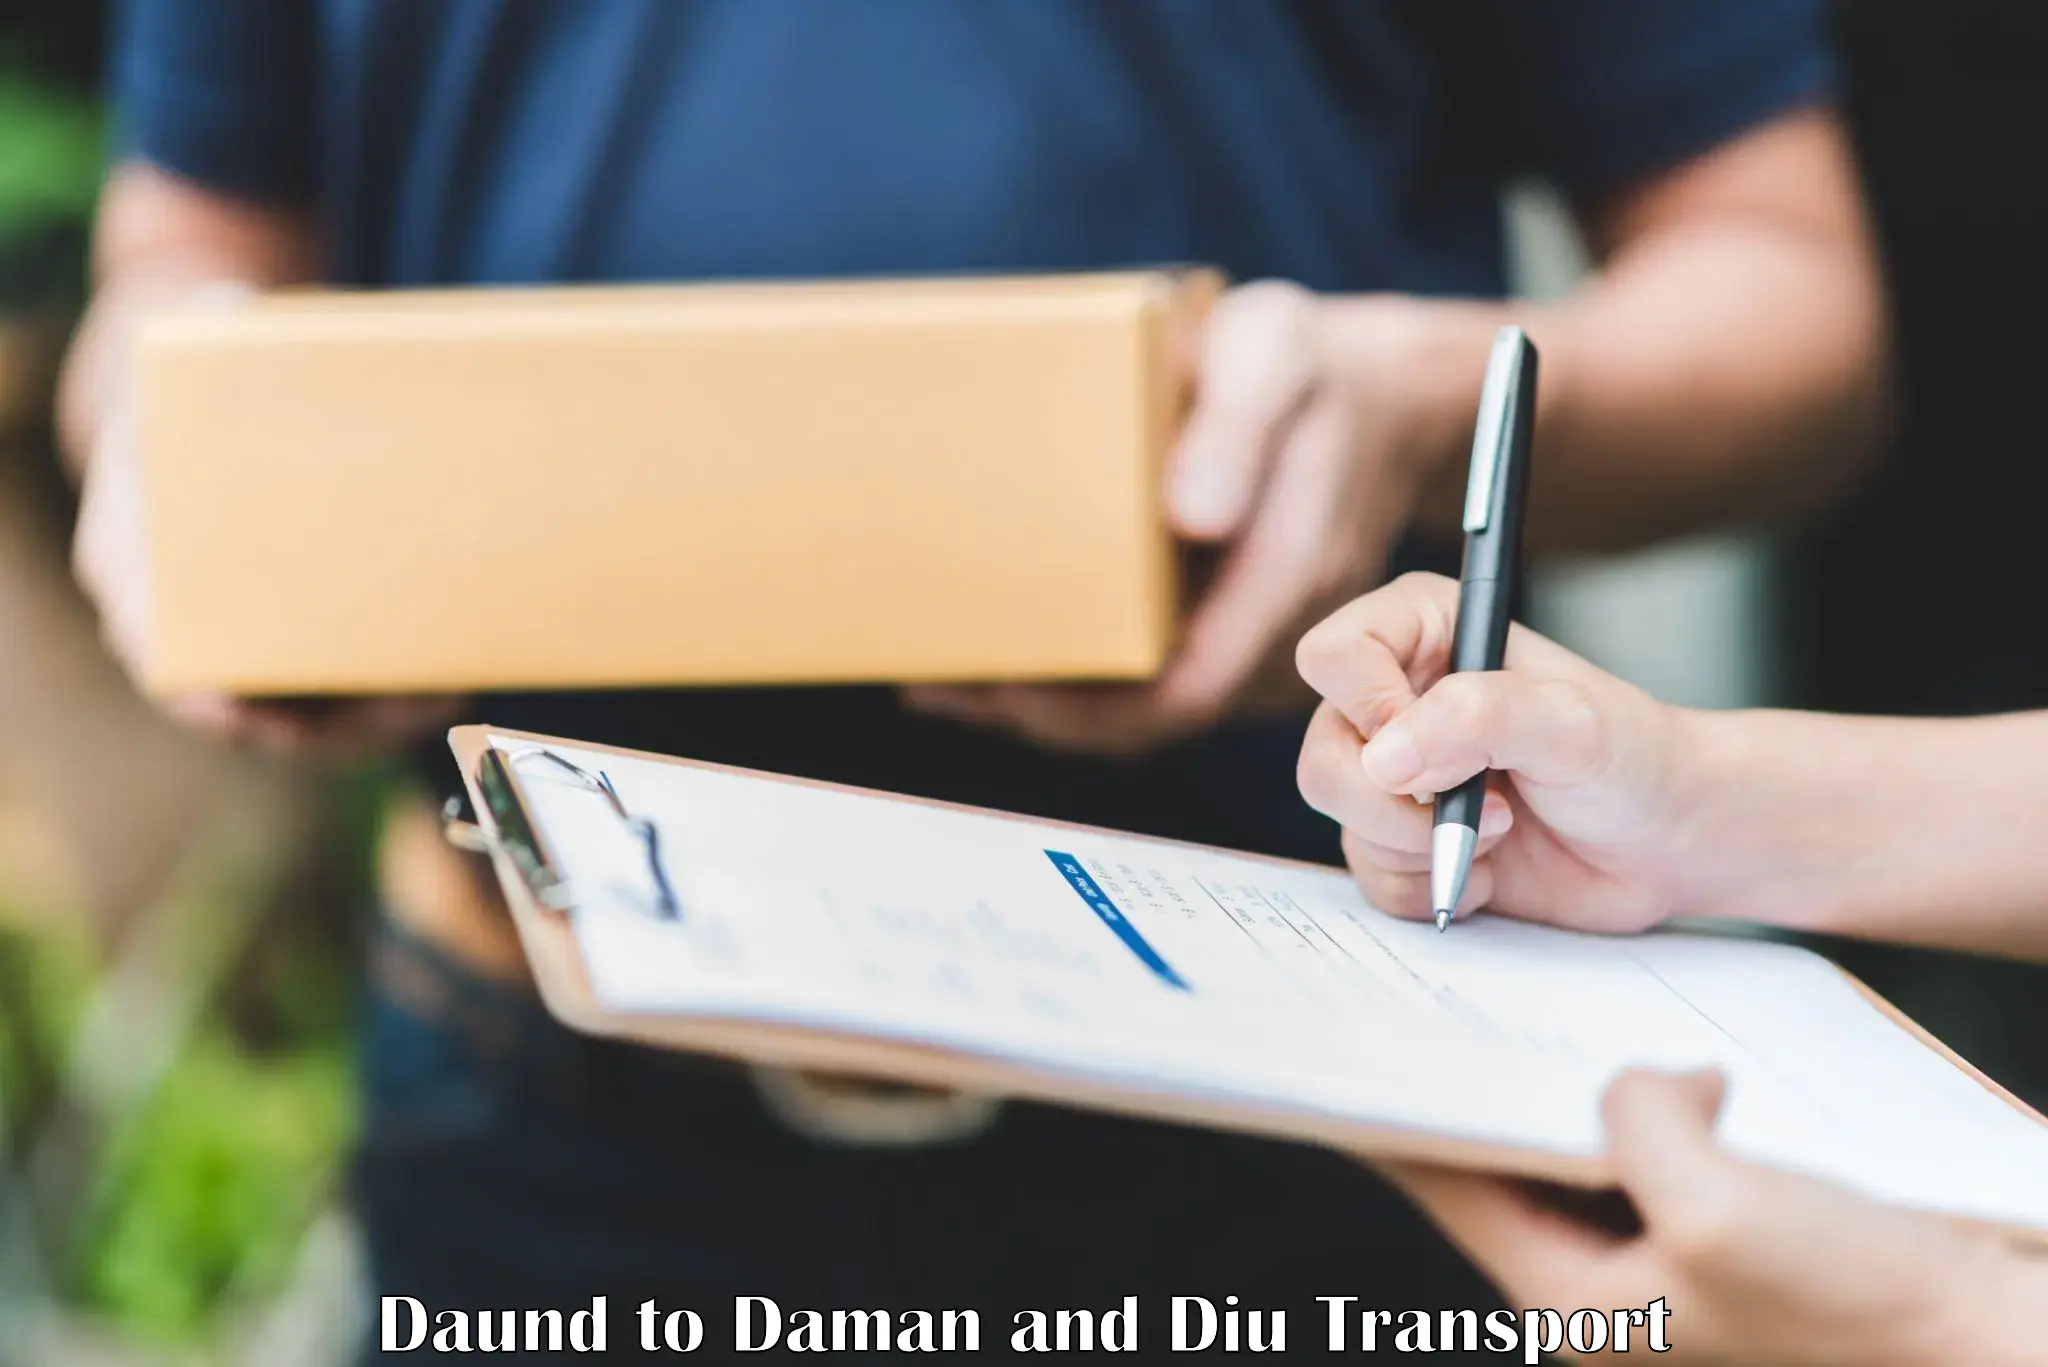 Online transport booking Daund to Diu